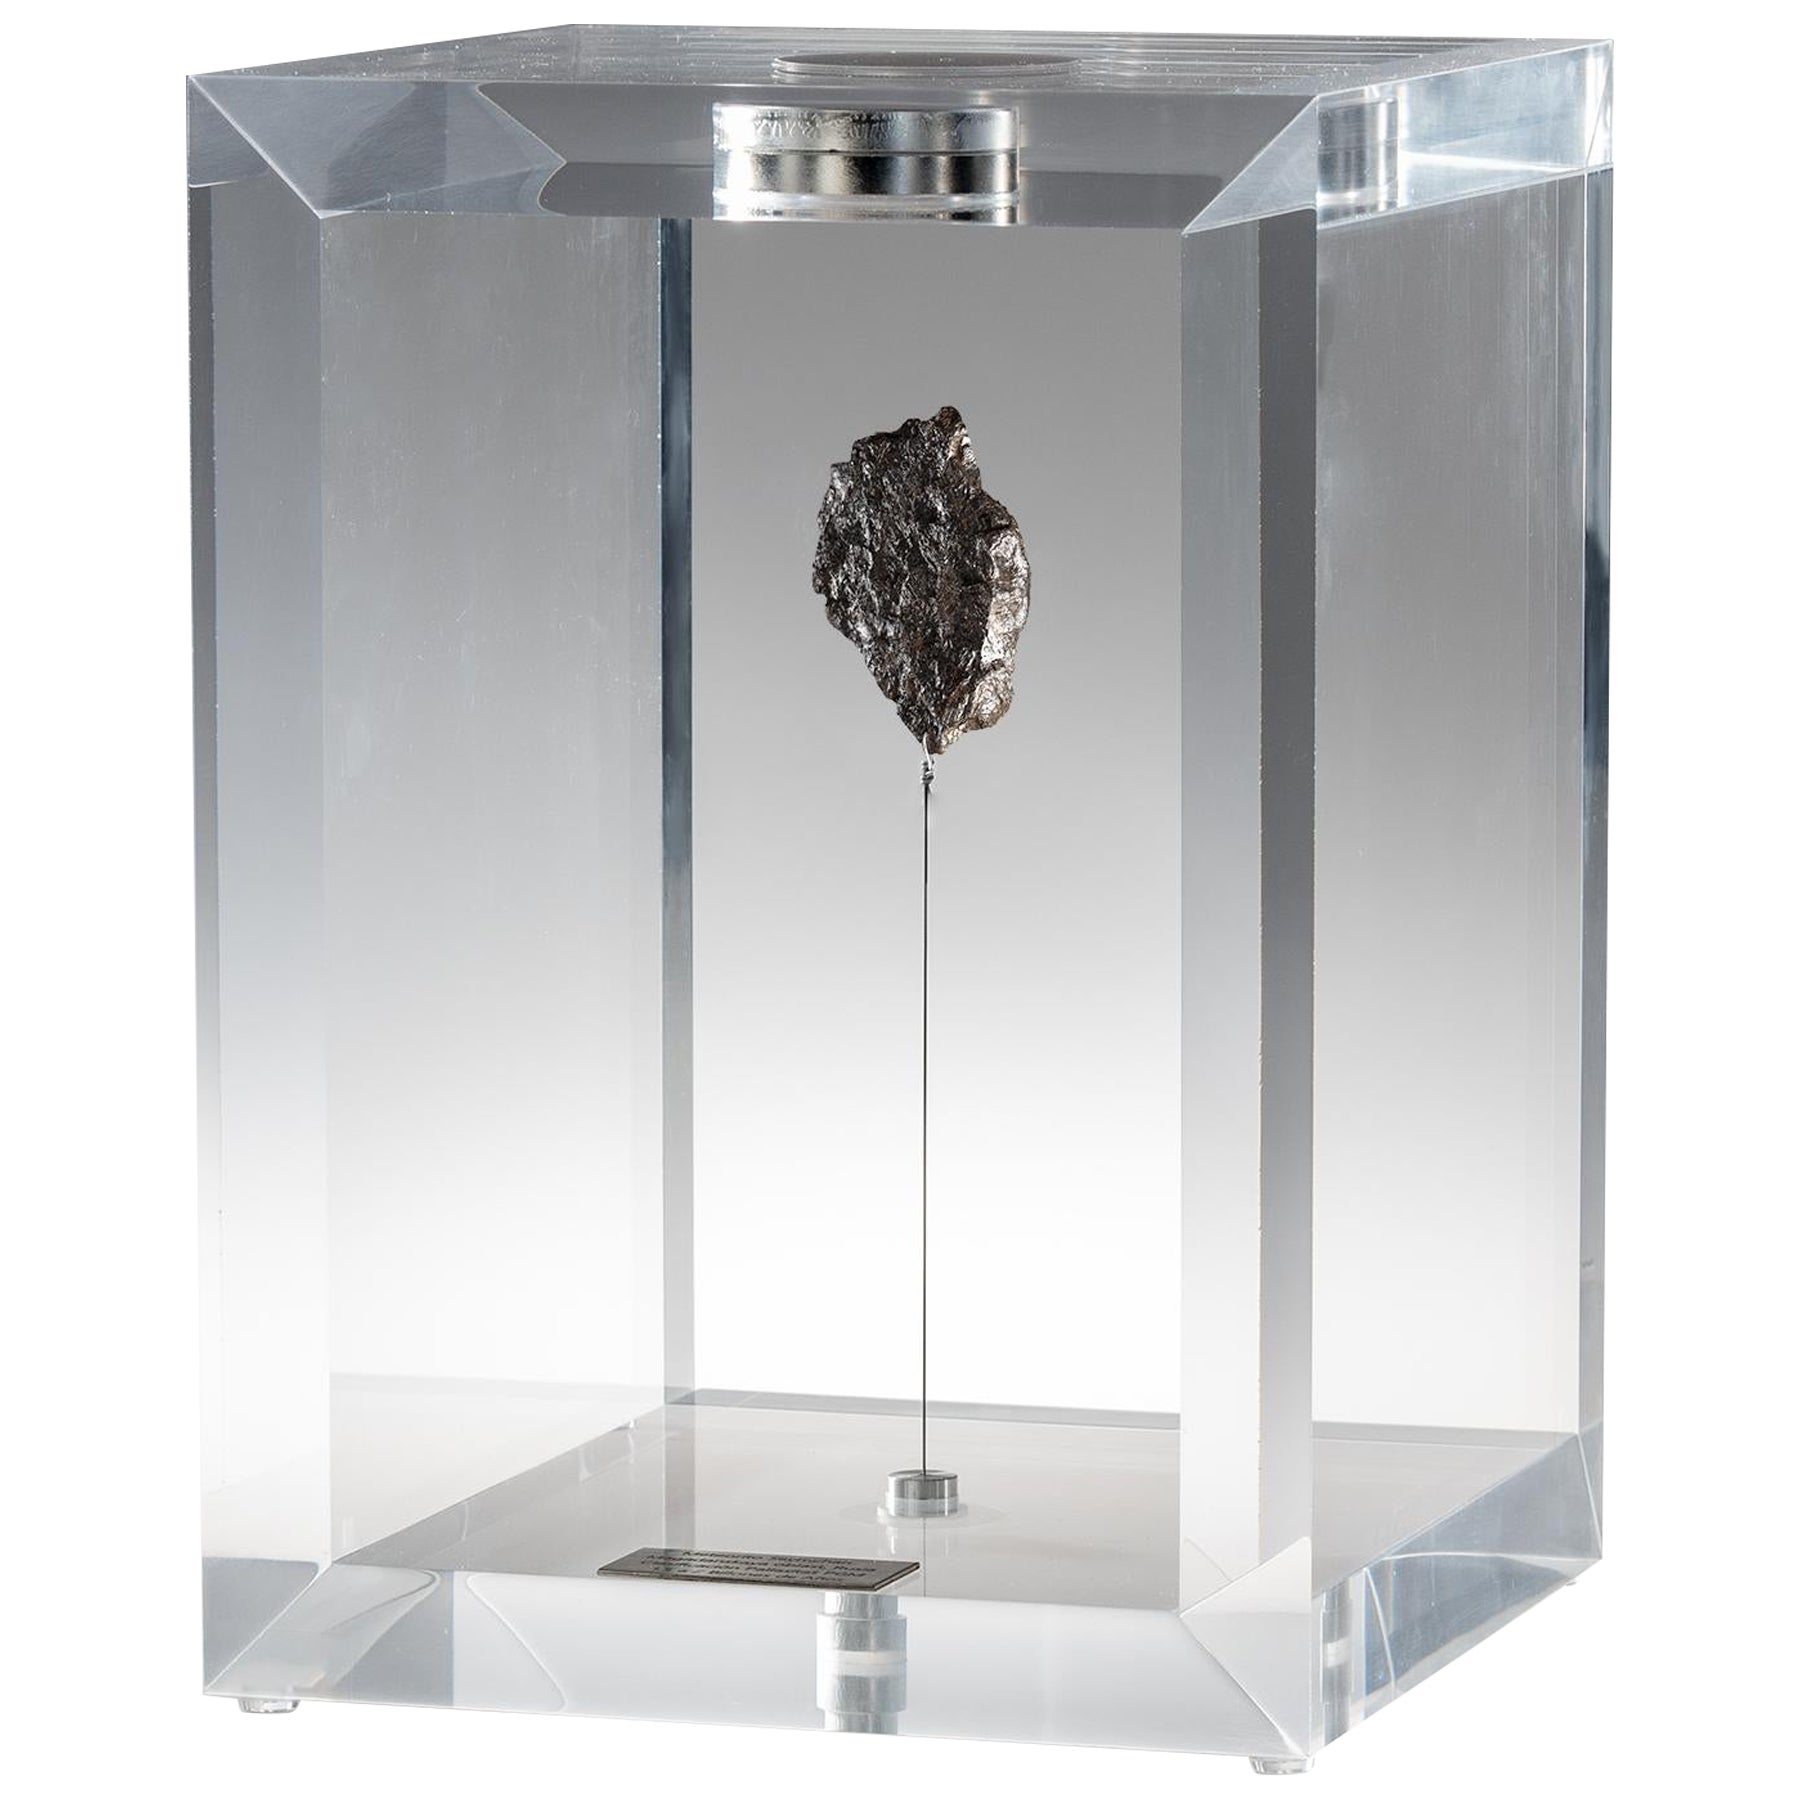 Original Design, Space Box, Swedish Muonionalusta, Meteorite in Acrylic Box For Sale